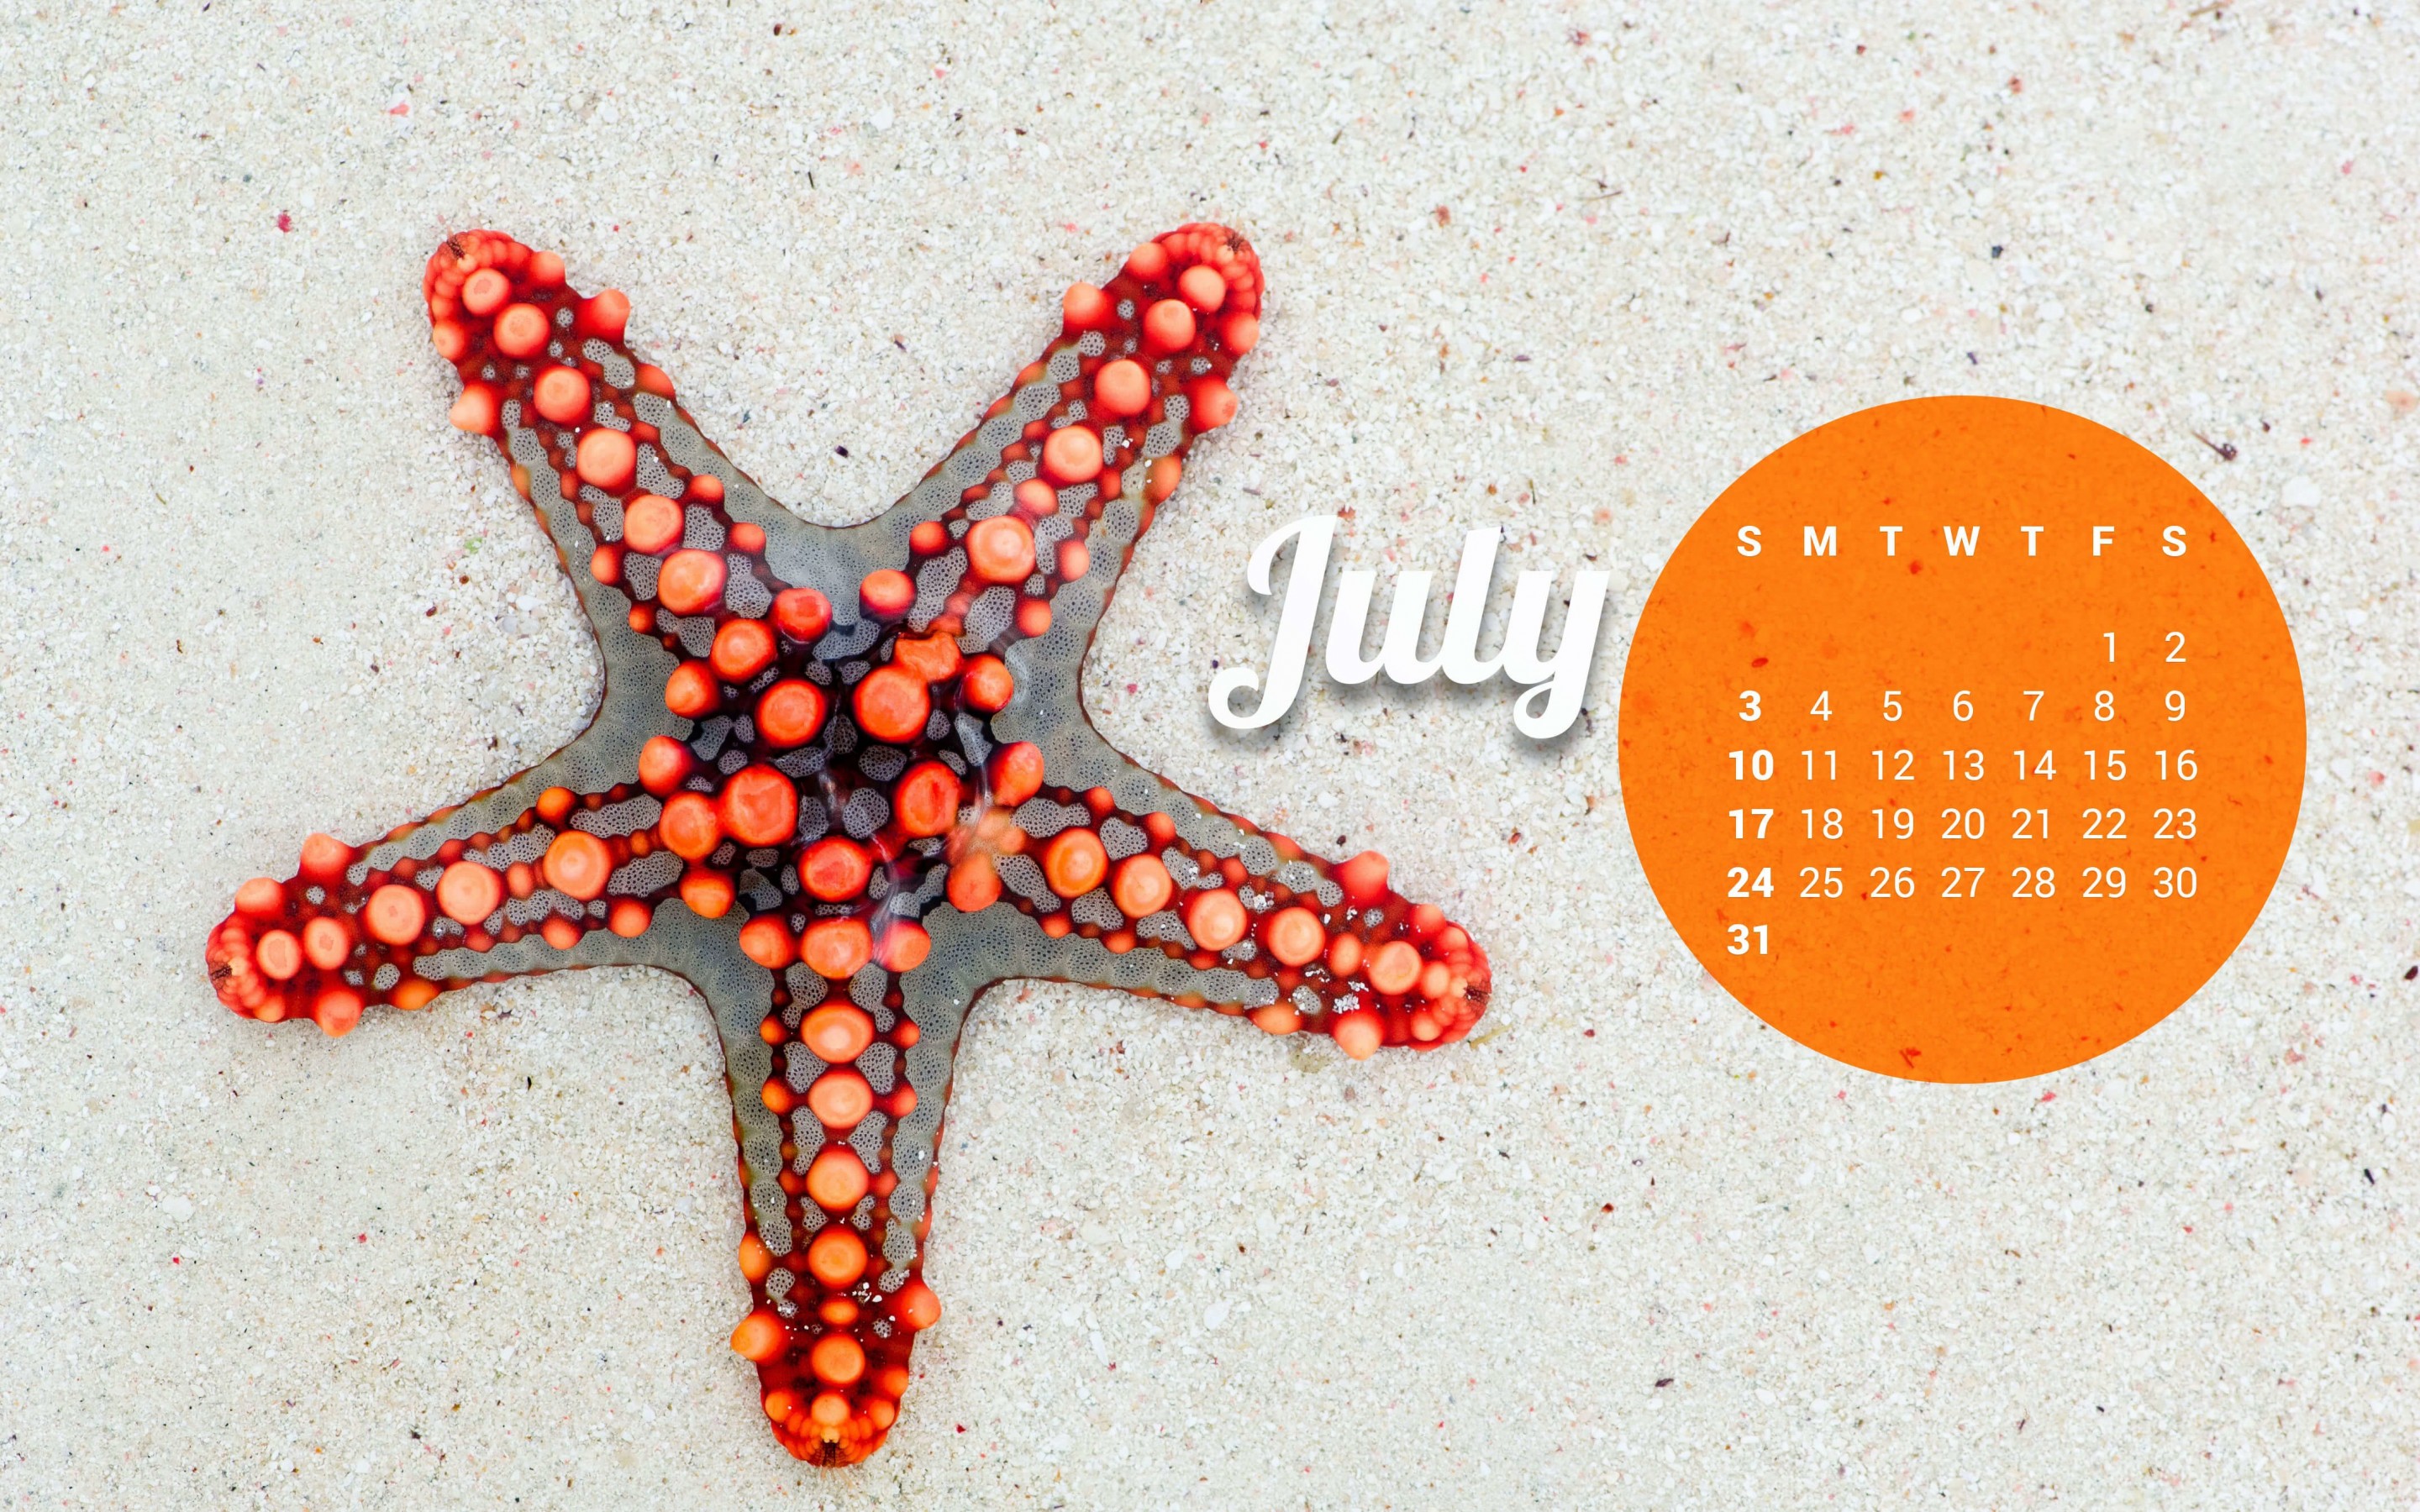 July 2016 Calendar Wallpaper for Desktop 2880x1800